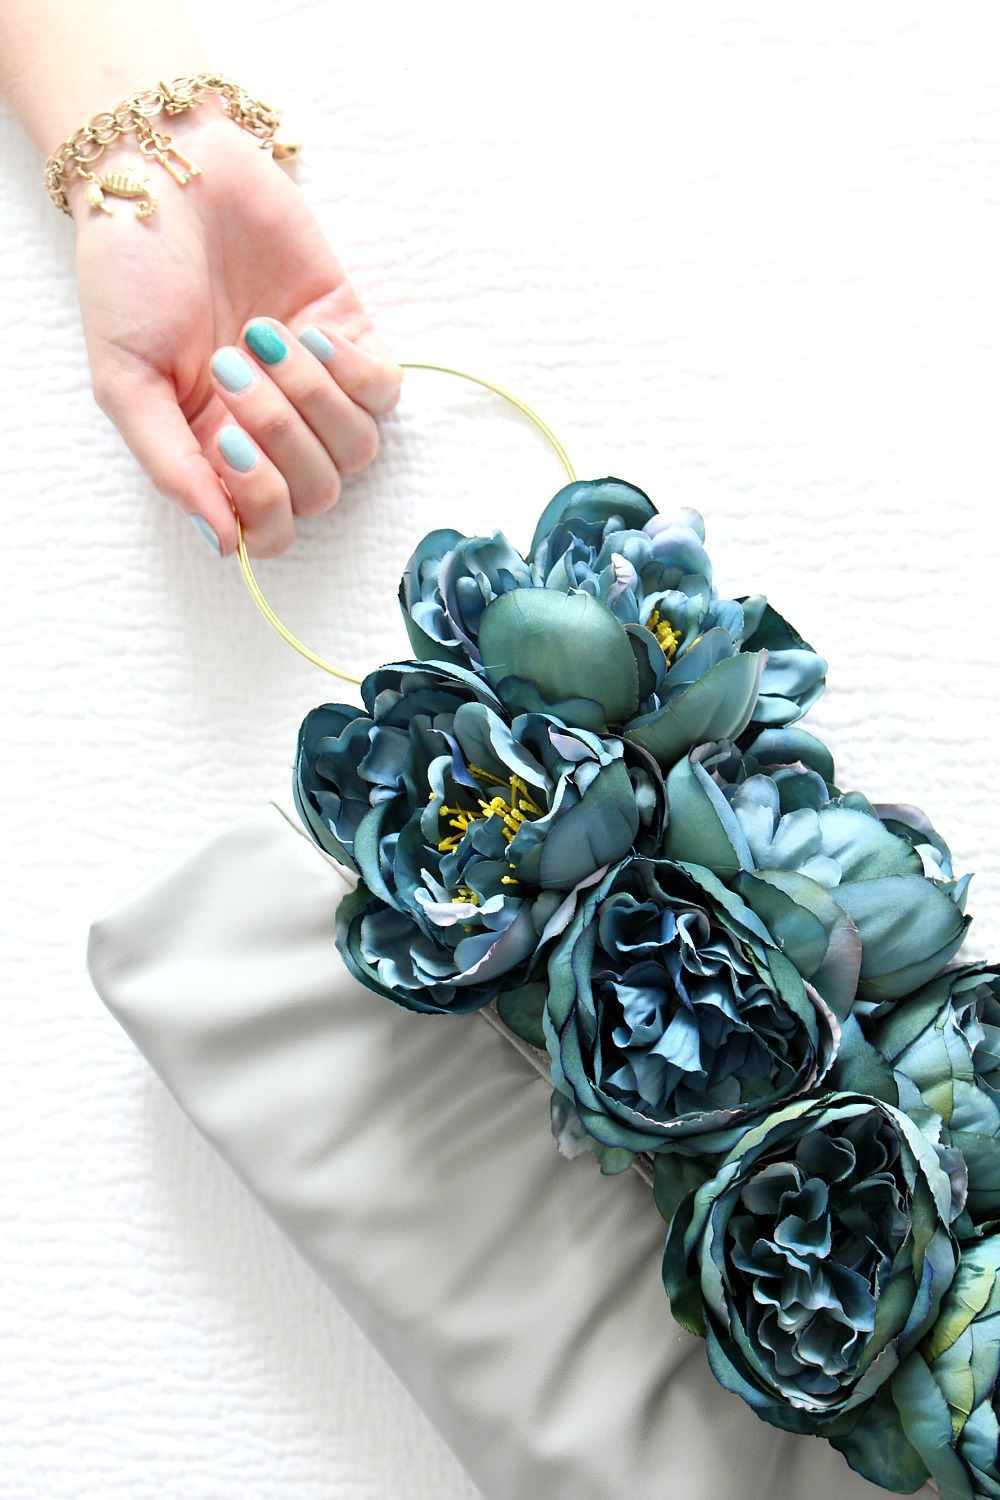 Spice up handväska konstgjorda blommor dekoration idéer upcycling armband handväskor